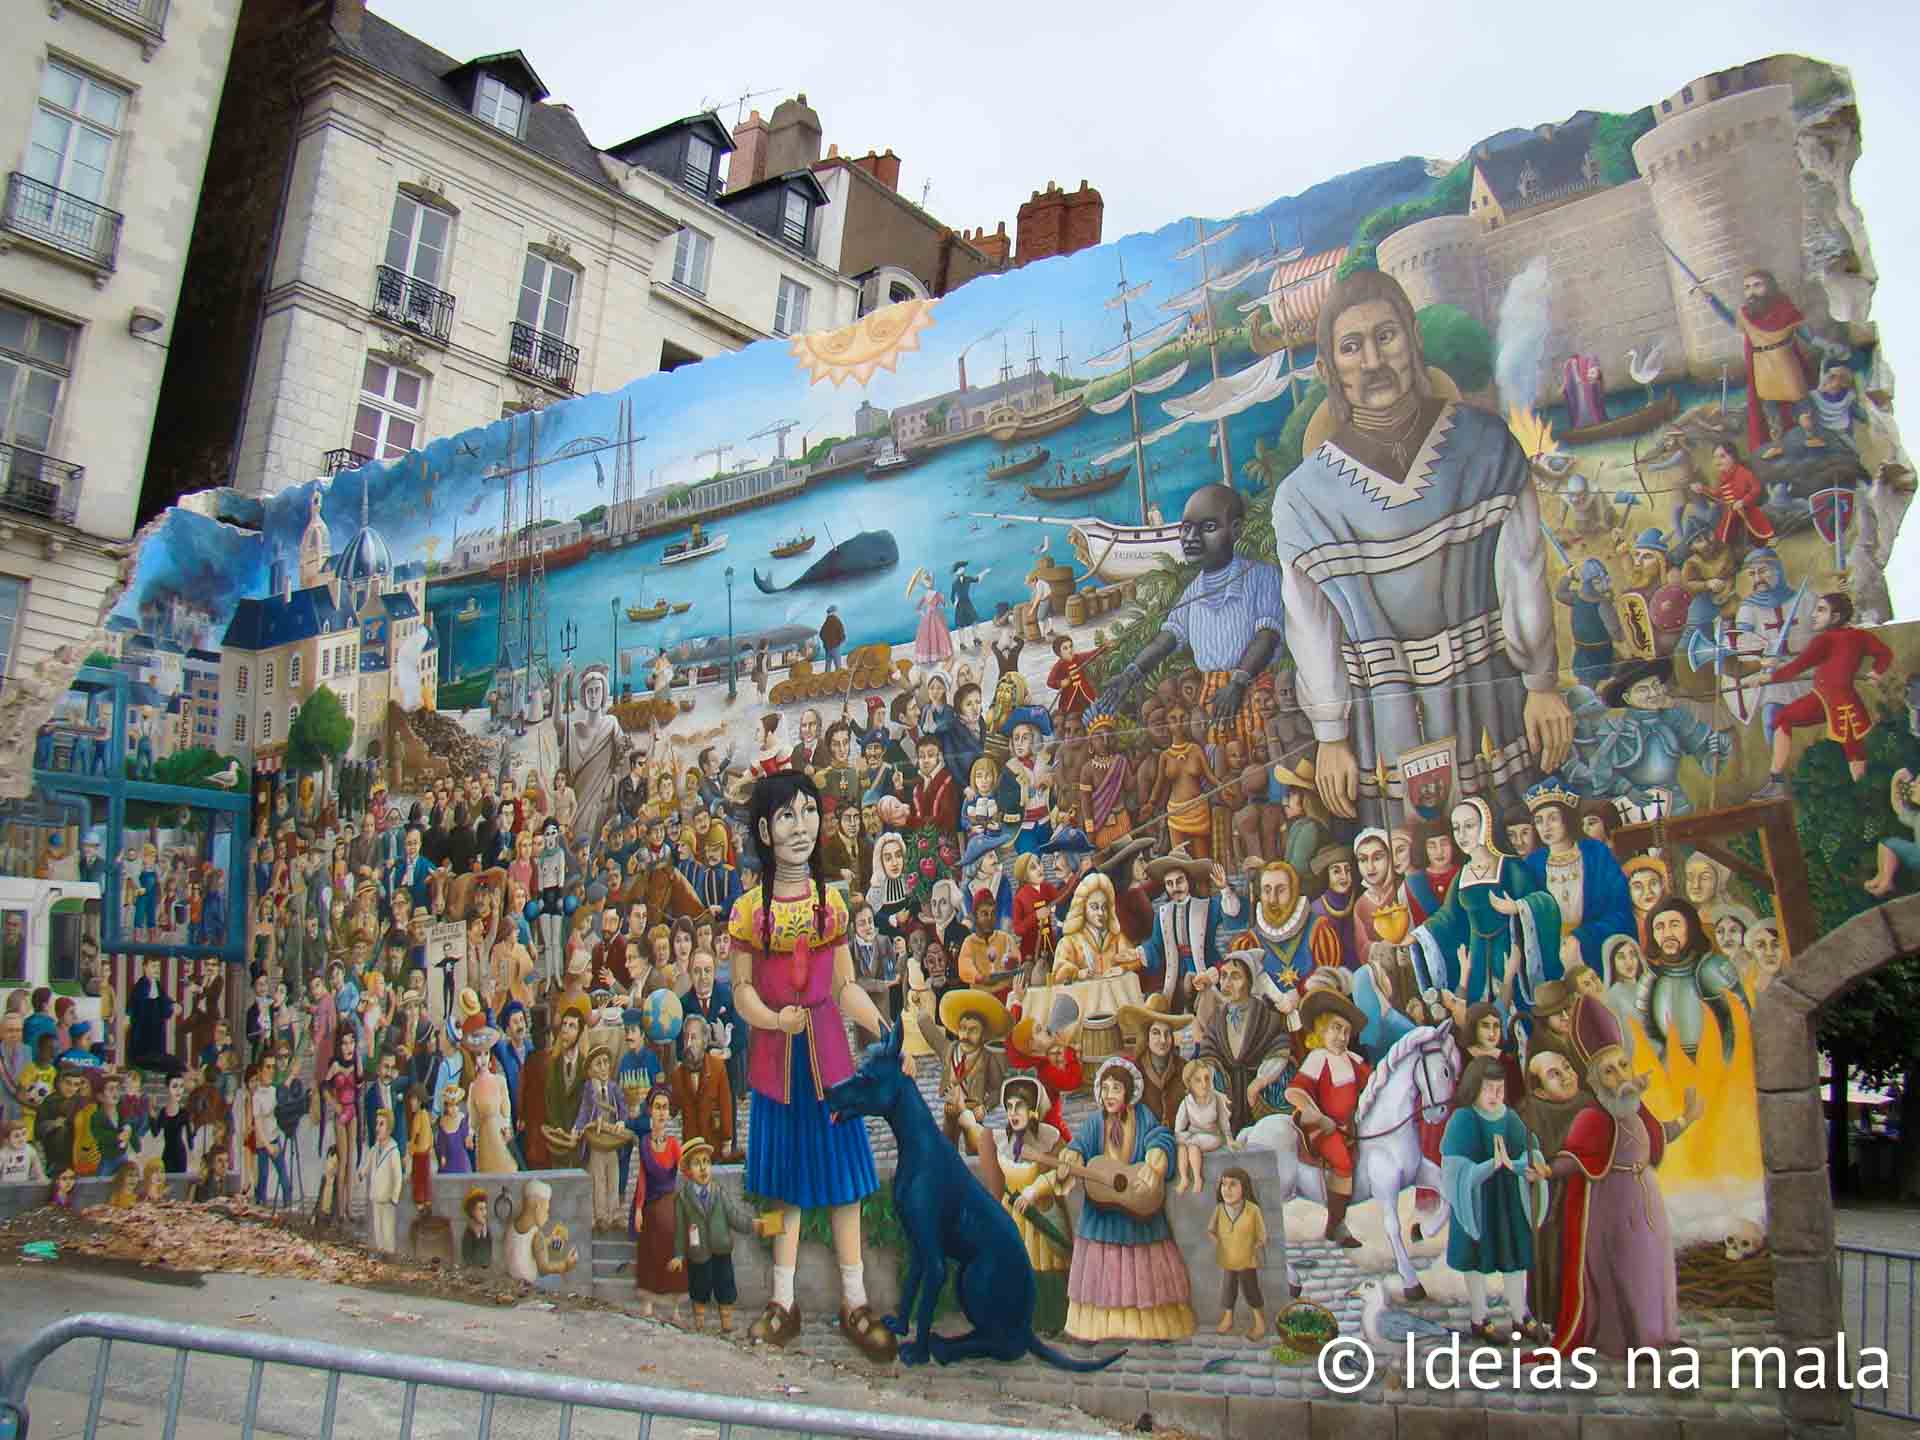 Mural dedicado a Julio Vernes em Nantes